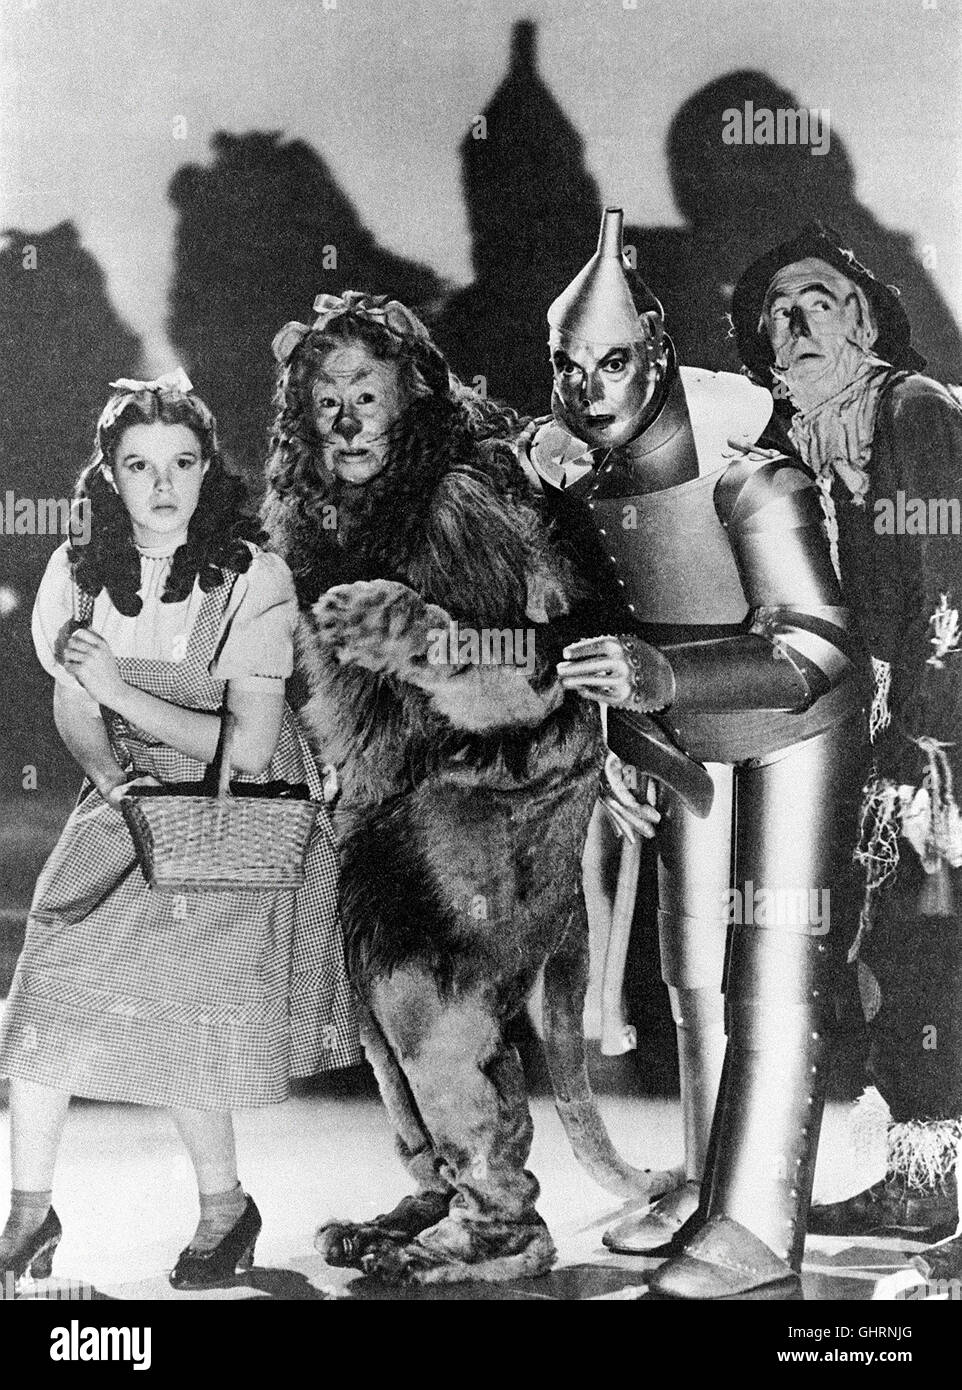 DAS ZAUBERHAFTE LAND - Der Zauberer von Oz The Wizard of Oz USA 1939 JUDY GARLAND, BERT LAHR, RAY WOLGER, JACK HALEY Regie: VICTOR FLEMING aka. Wizard of OZ Stock Photo